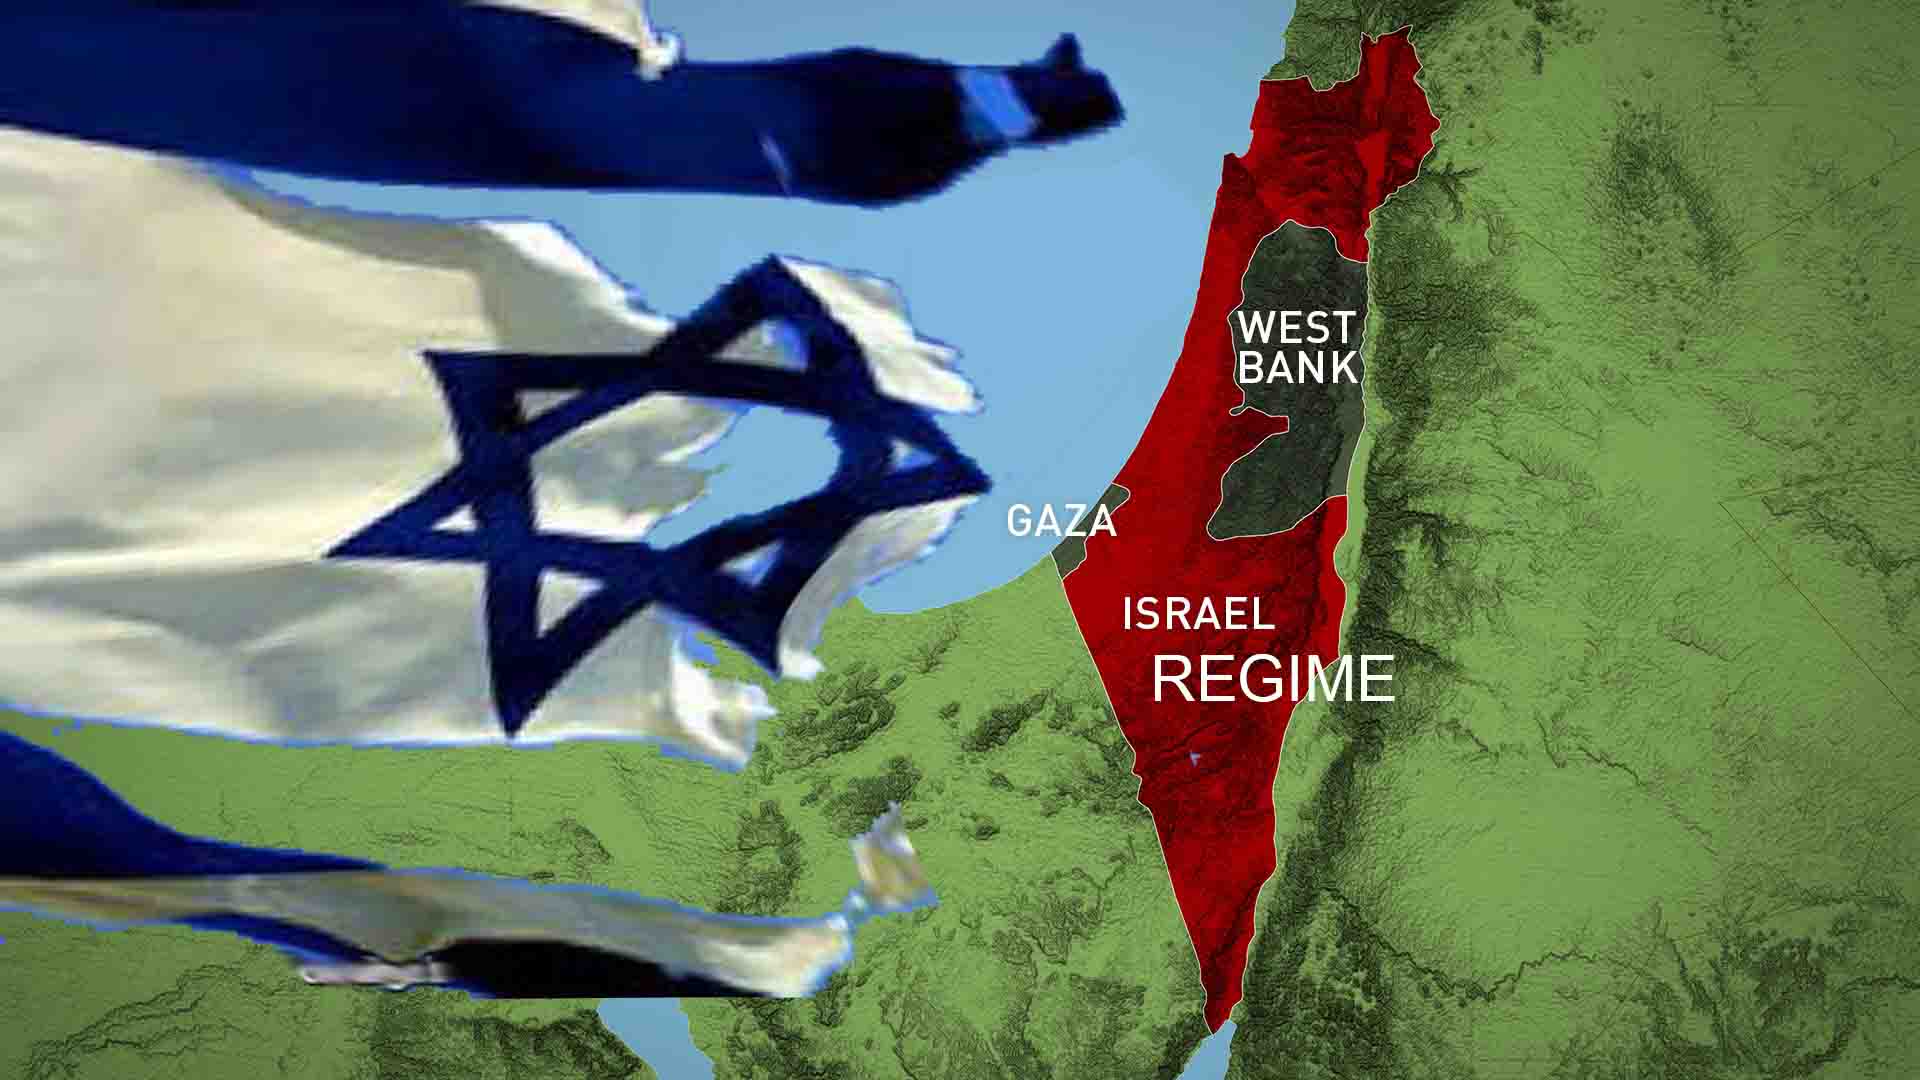 أزمة الکیان الاسرائیلی الاستراتیجیة : دراسة فی العمق و تحت المجهر!!